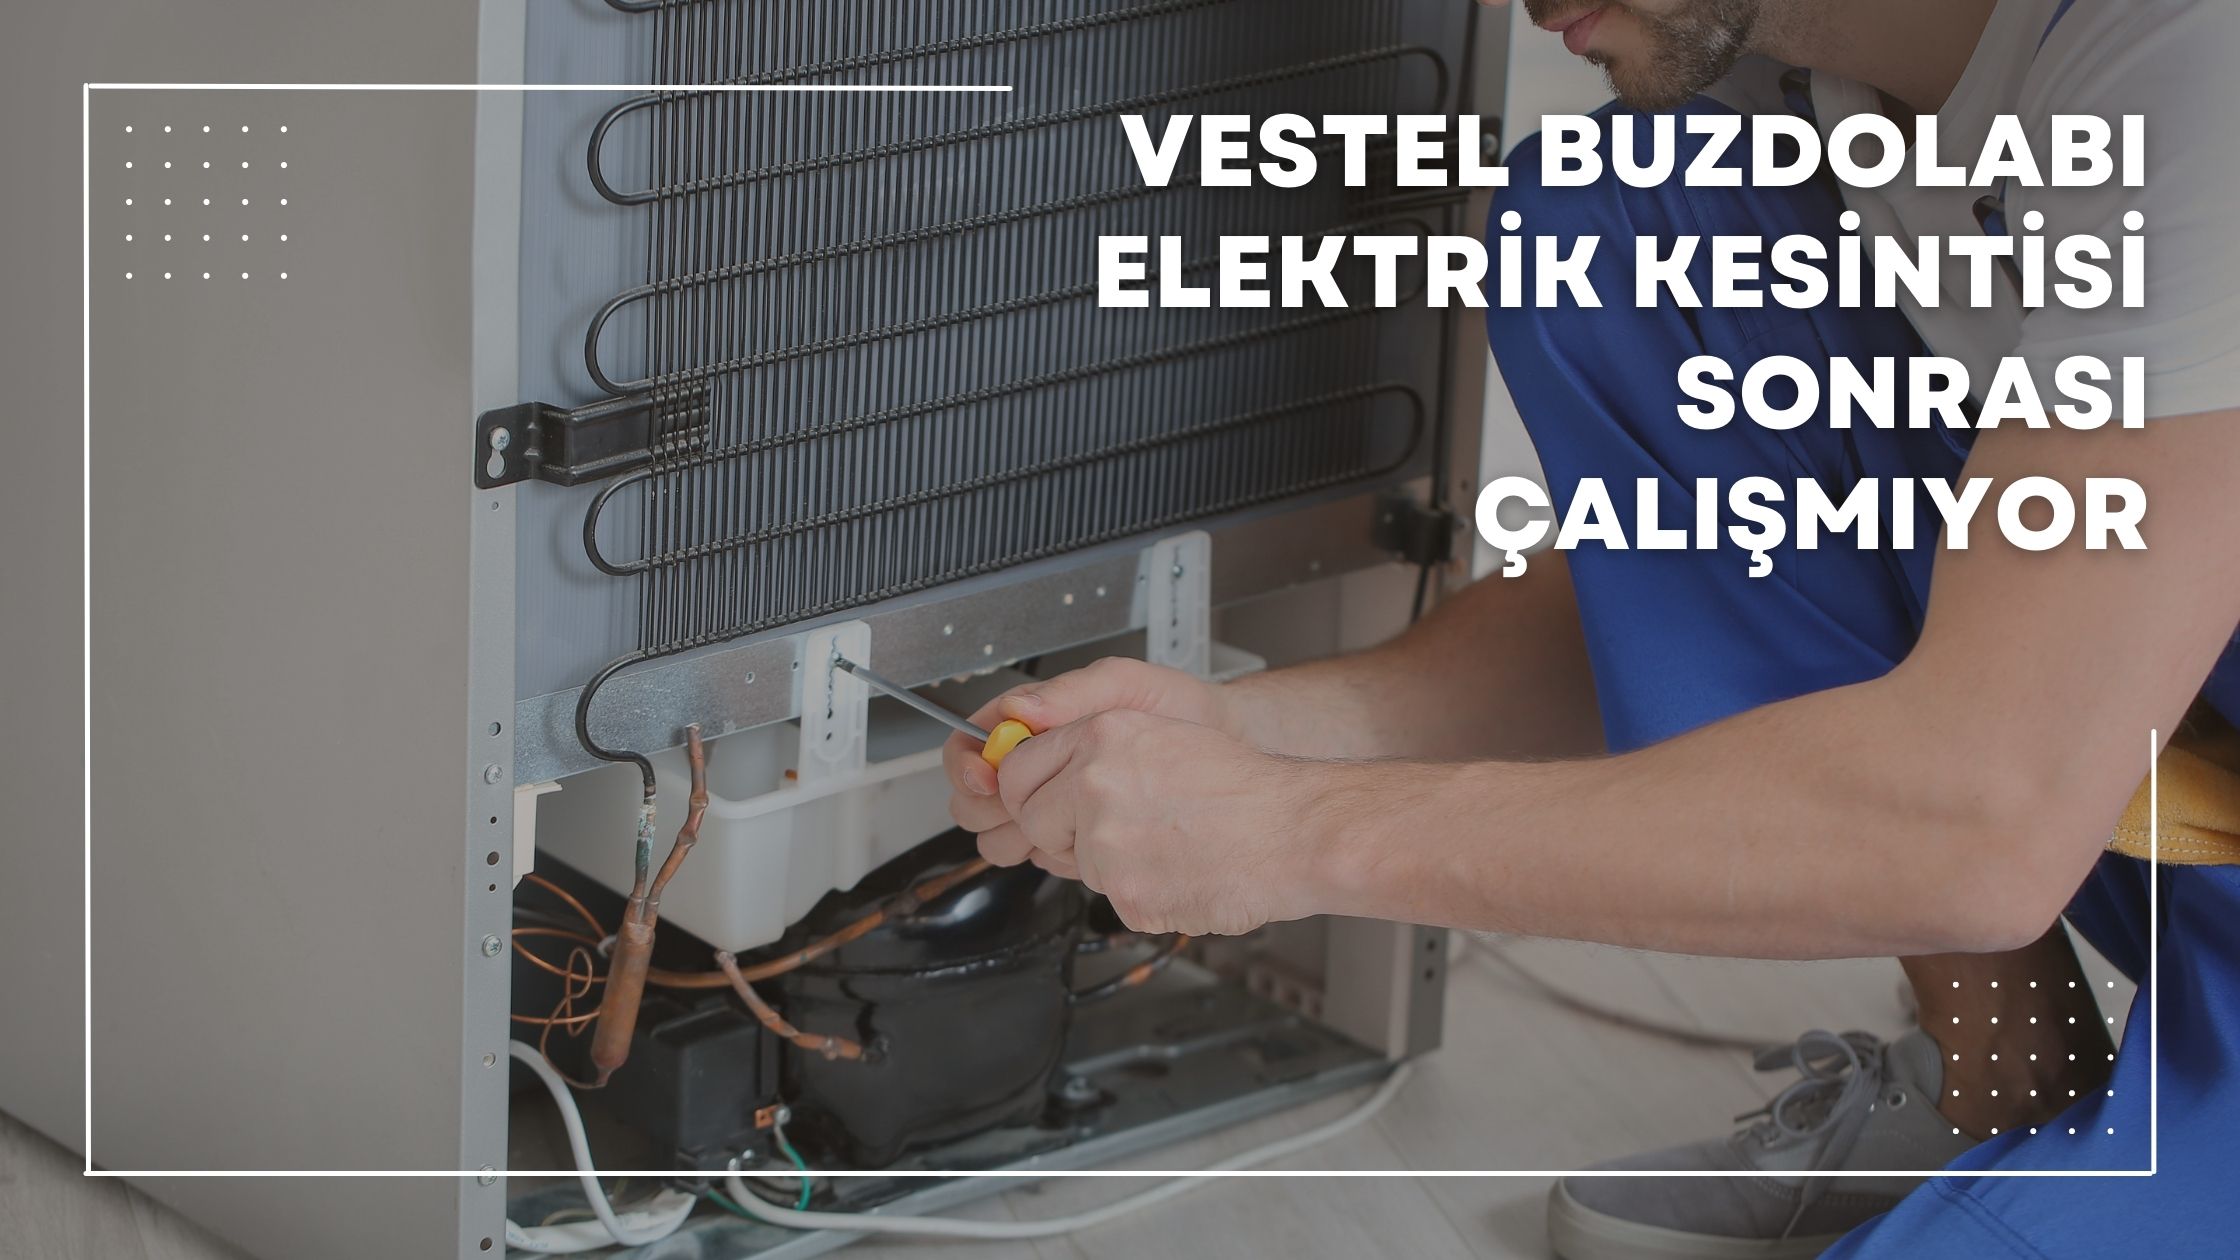 Vestel Buzdolabı Elektrik Kesintisi Sonrası Çalışmıyor